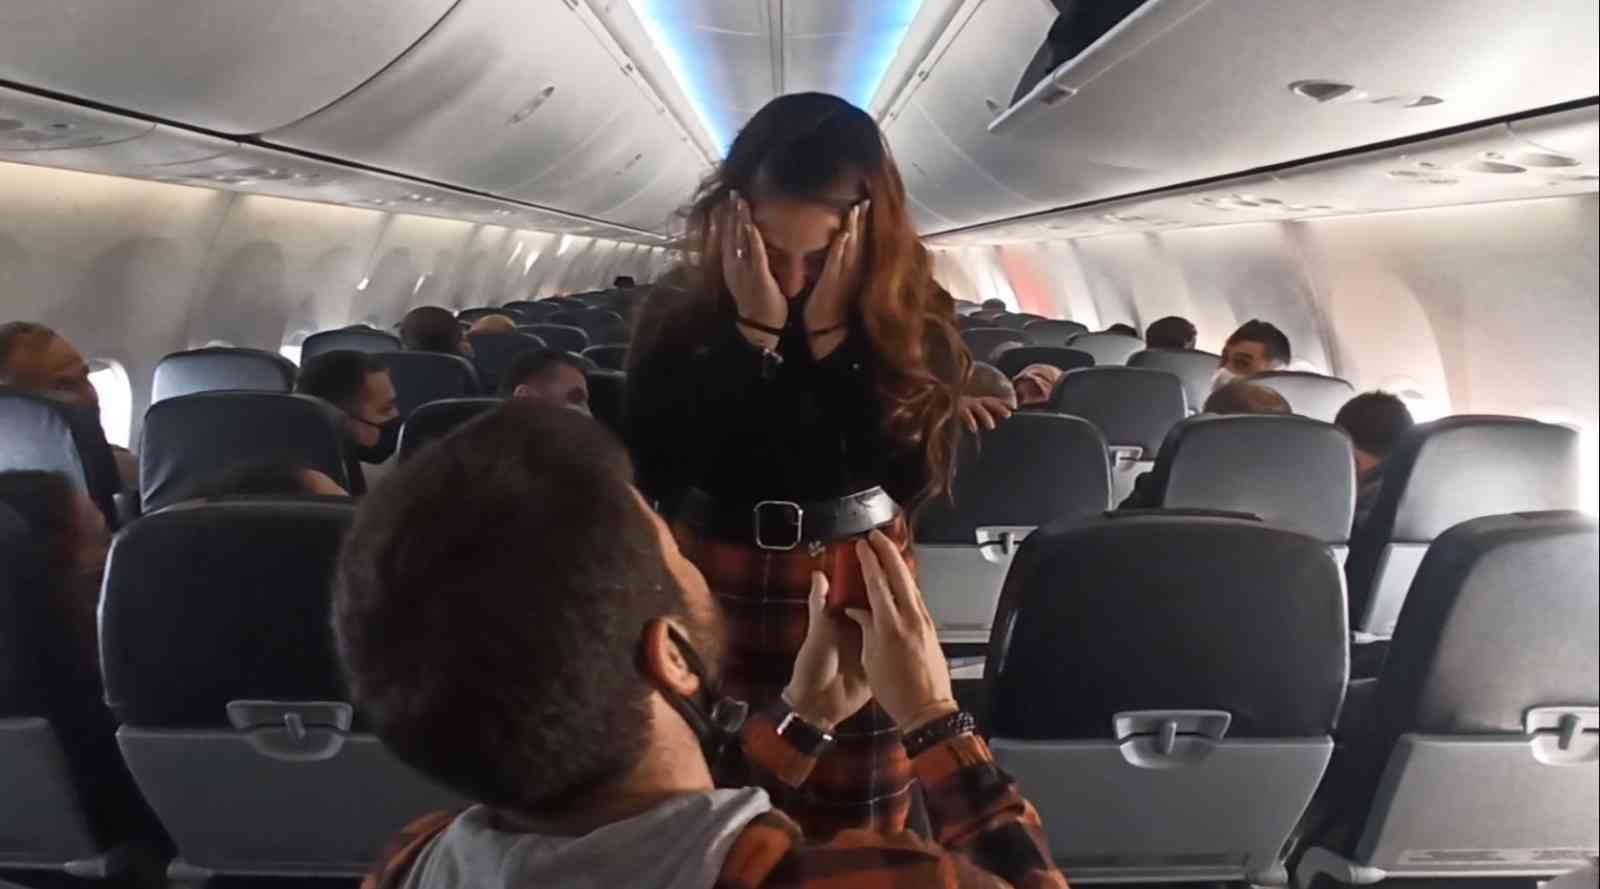 11 bin metre yüksekte 190 yolcunun önünde evlilik teklifi